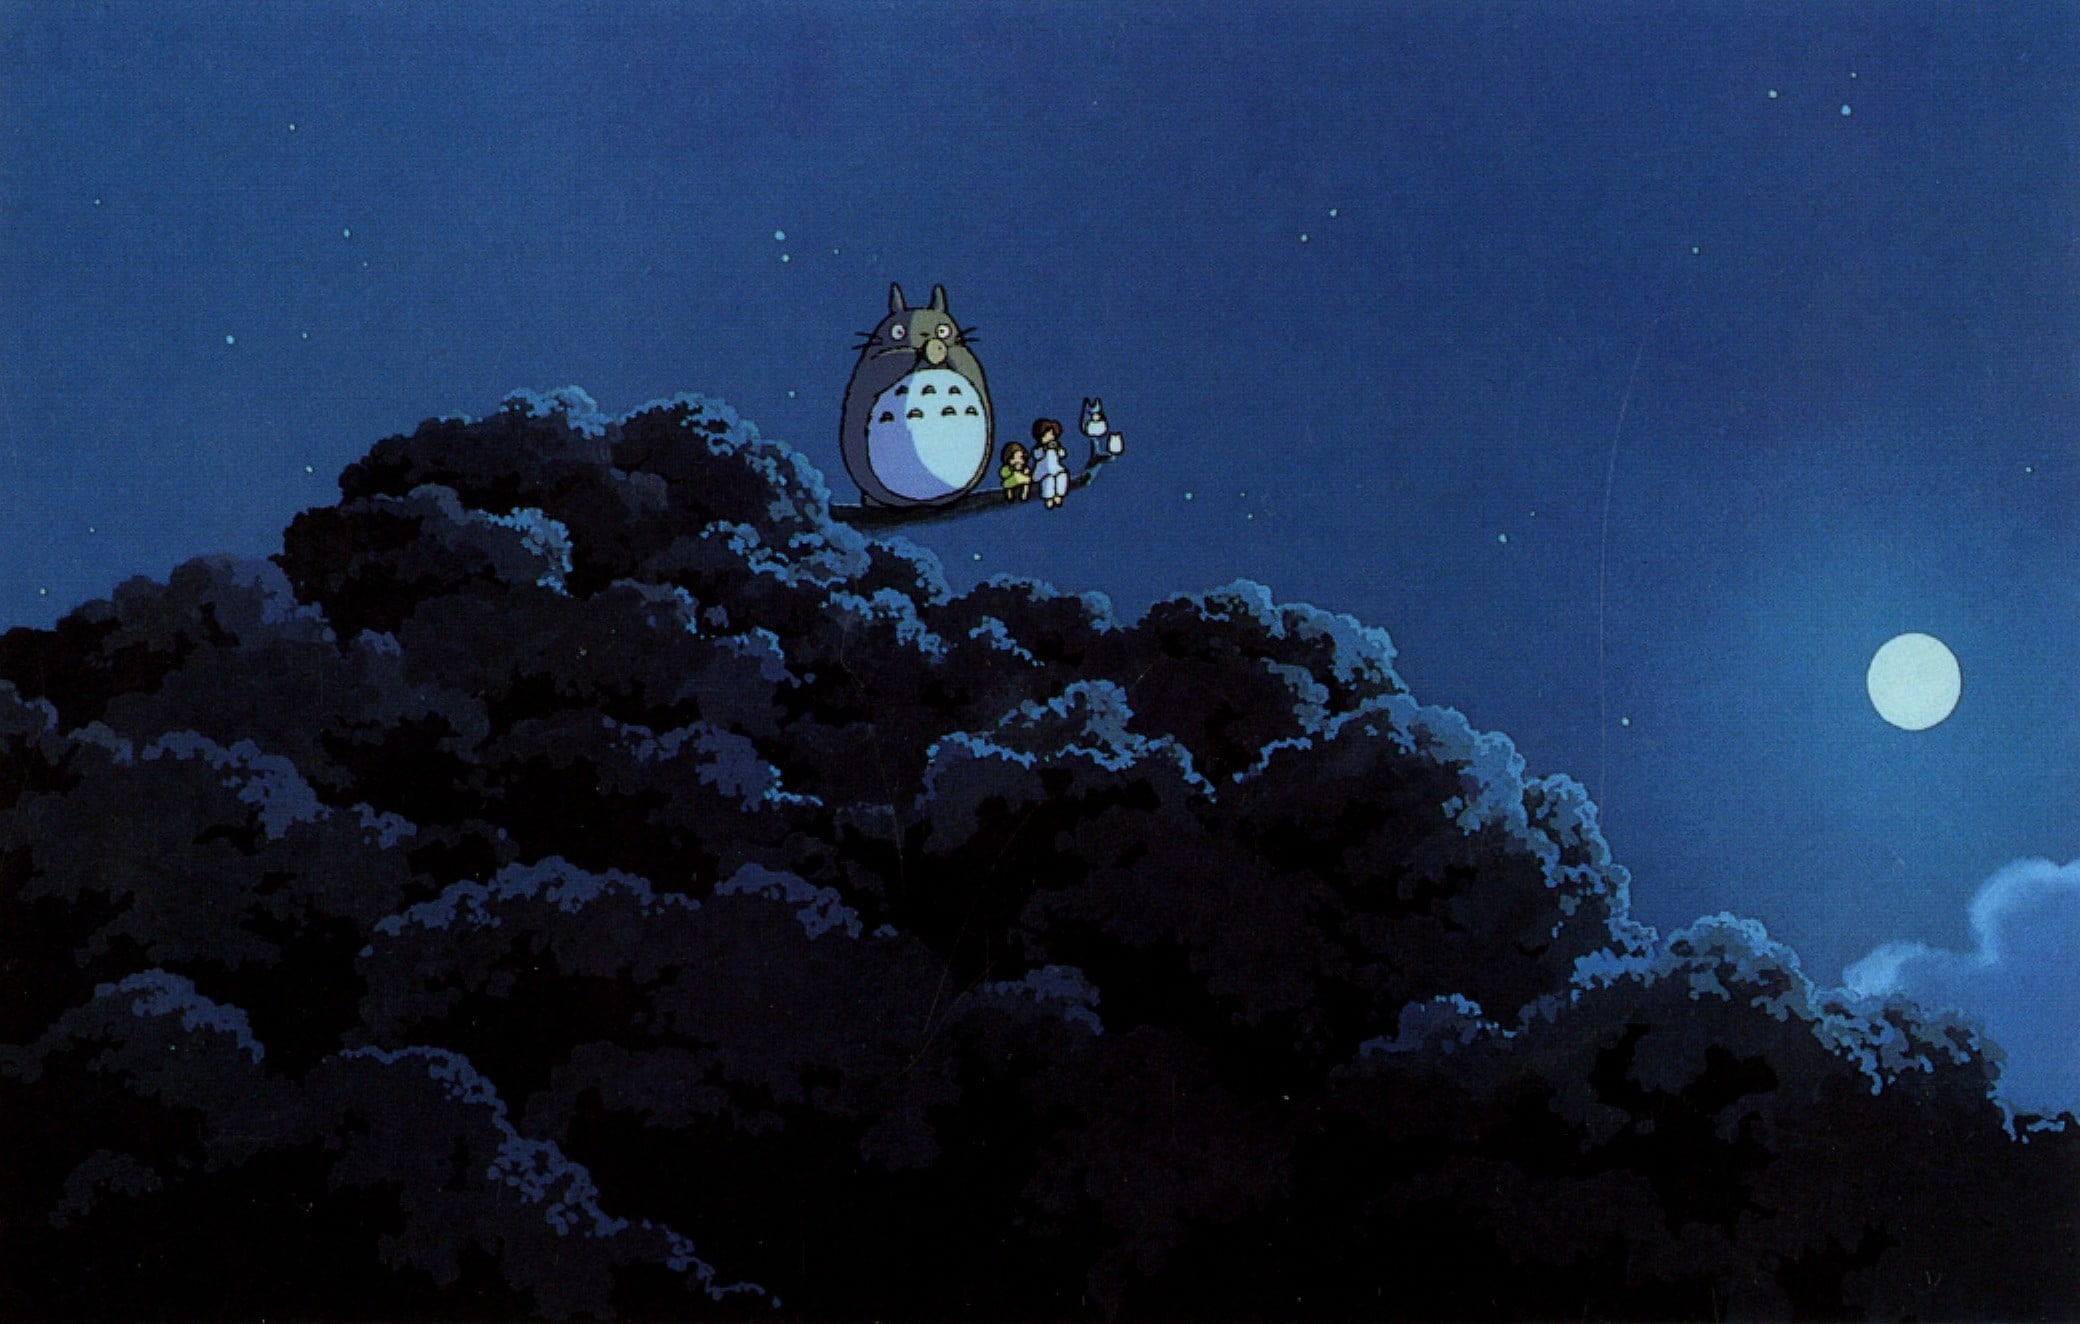 My Neighbor Totoro movie still, Hayao Miyazaki, My Neighbor Totoro, Totoro, anime